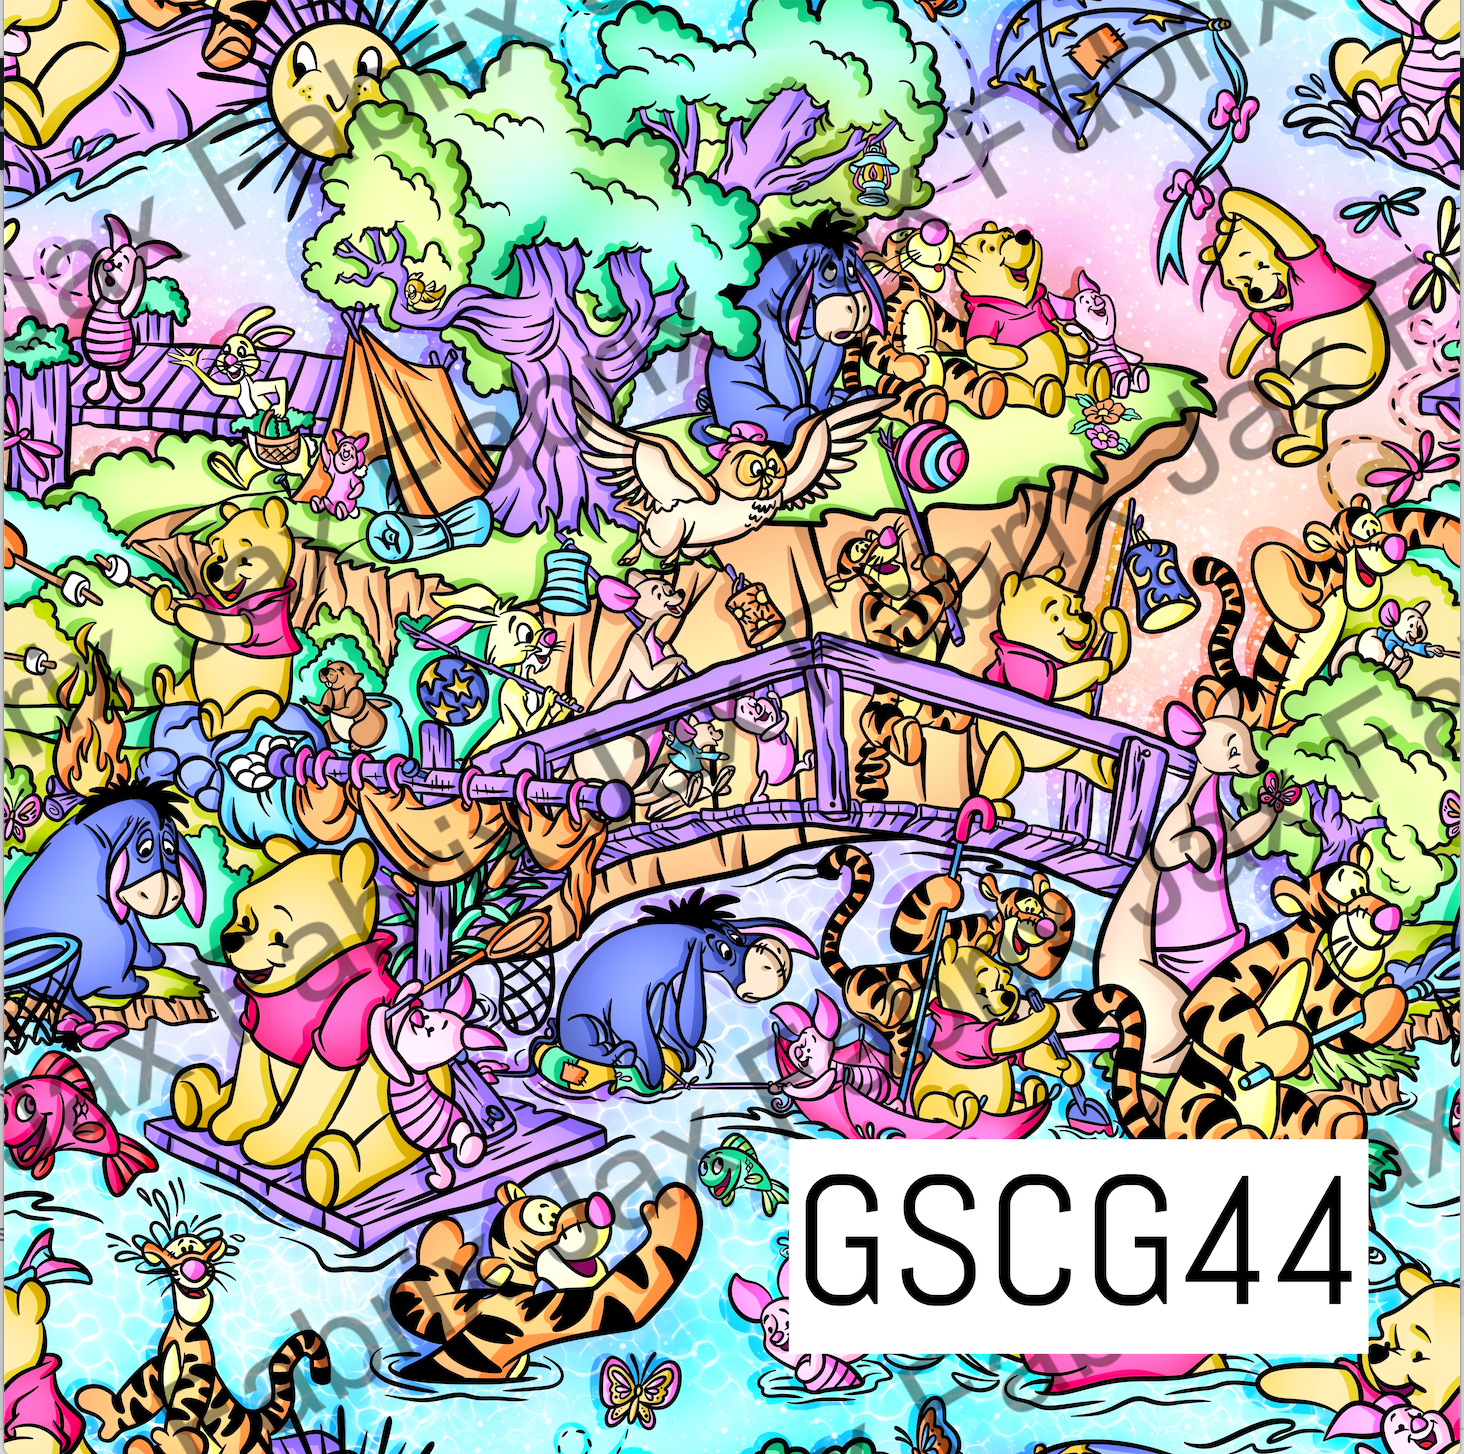 Summertime Pooh GSCG44 – Jax Fabrix